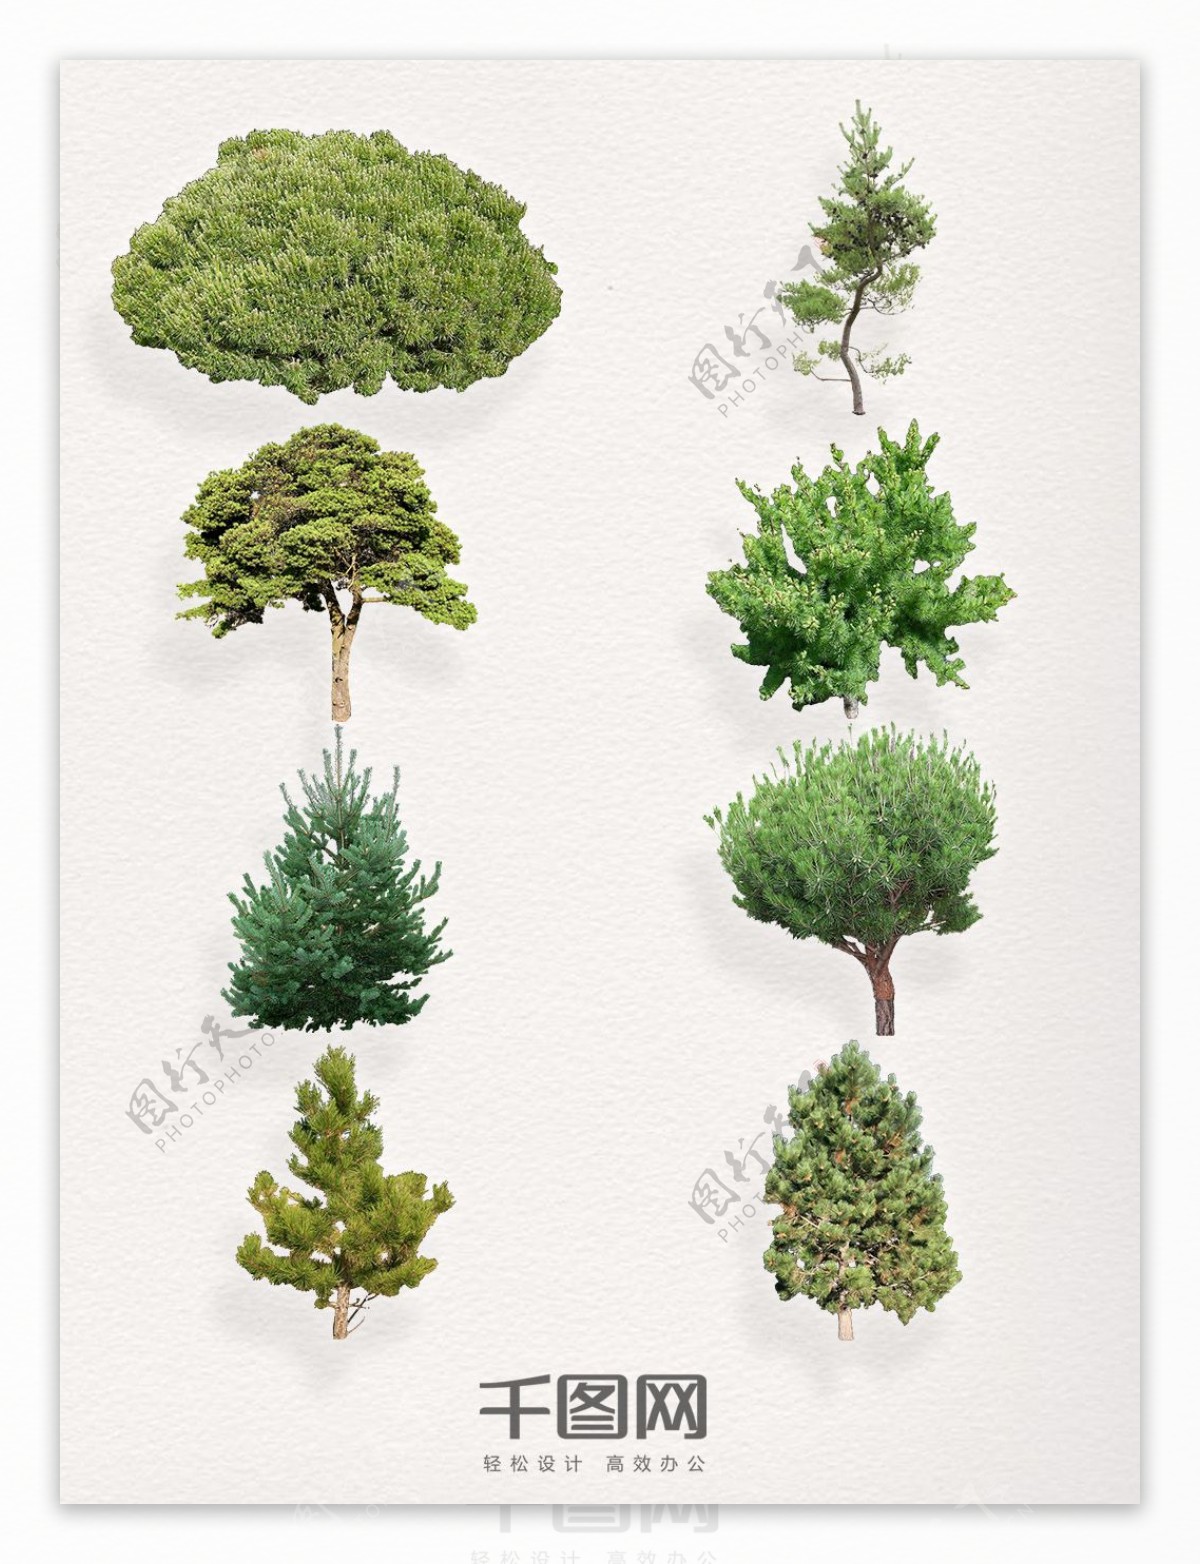 一组不同种类的松树装饰图